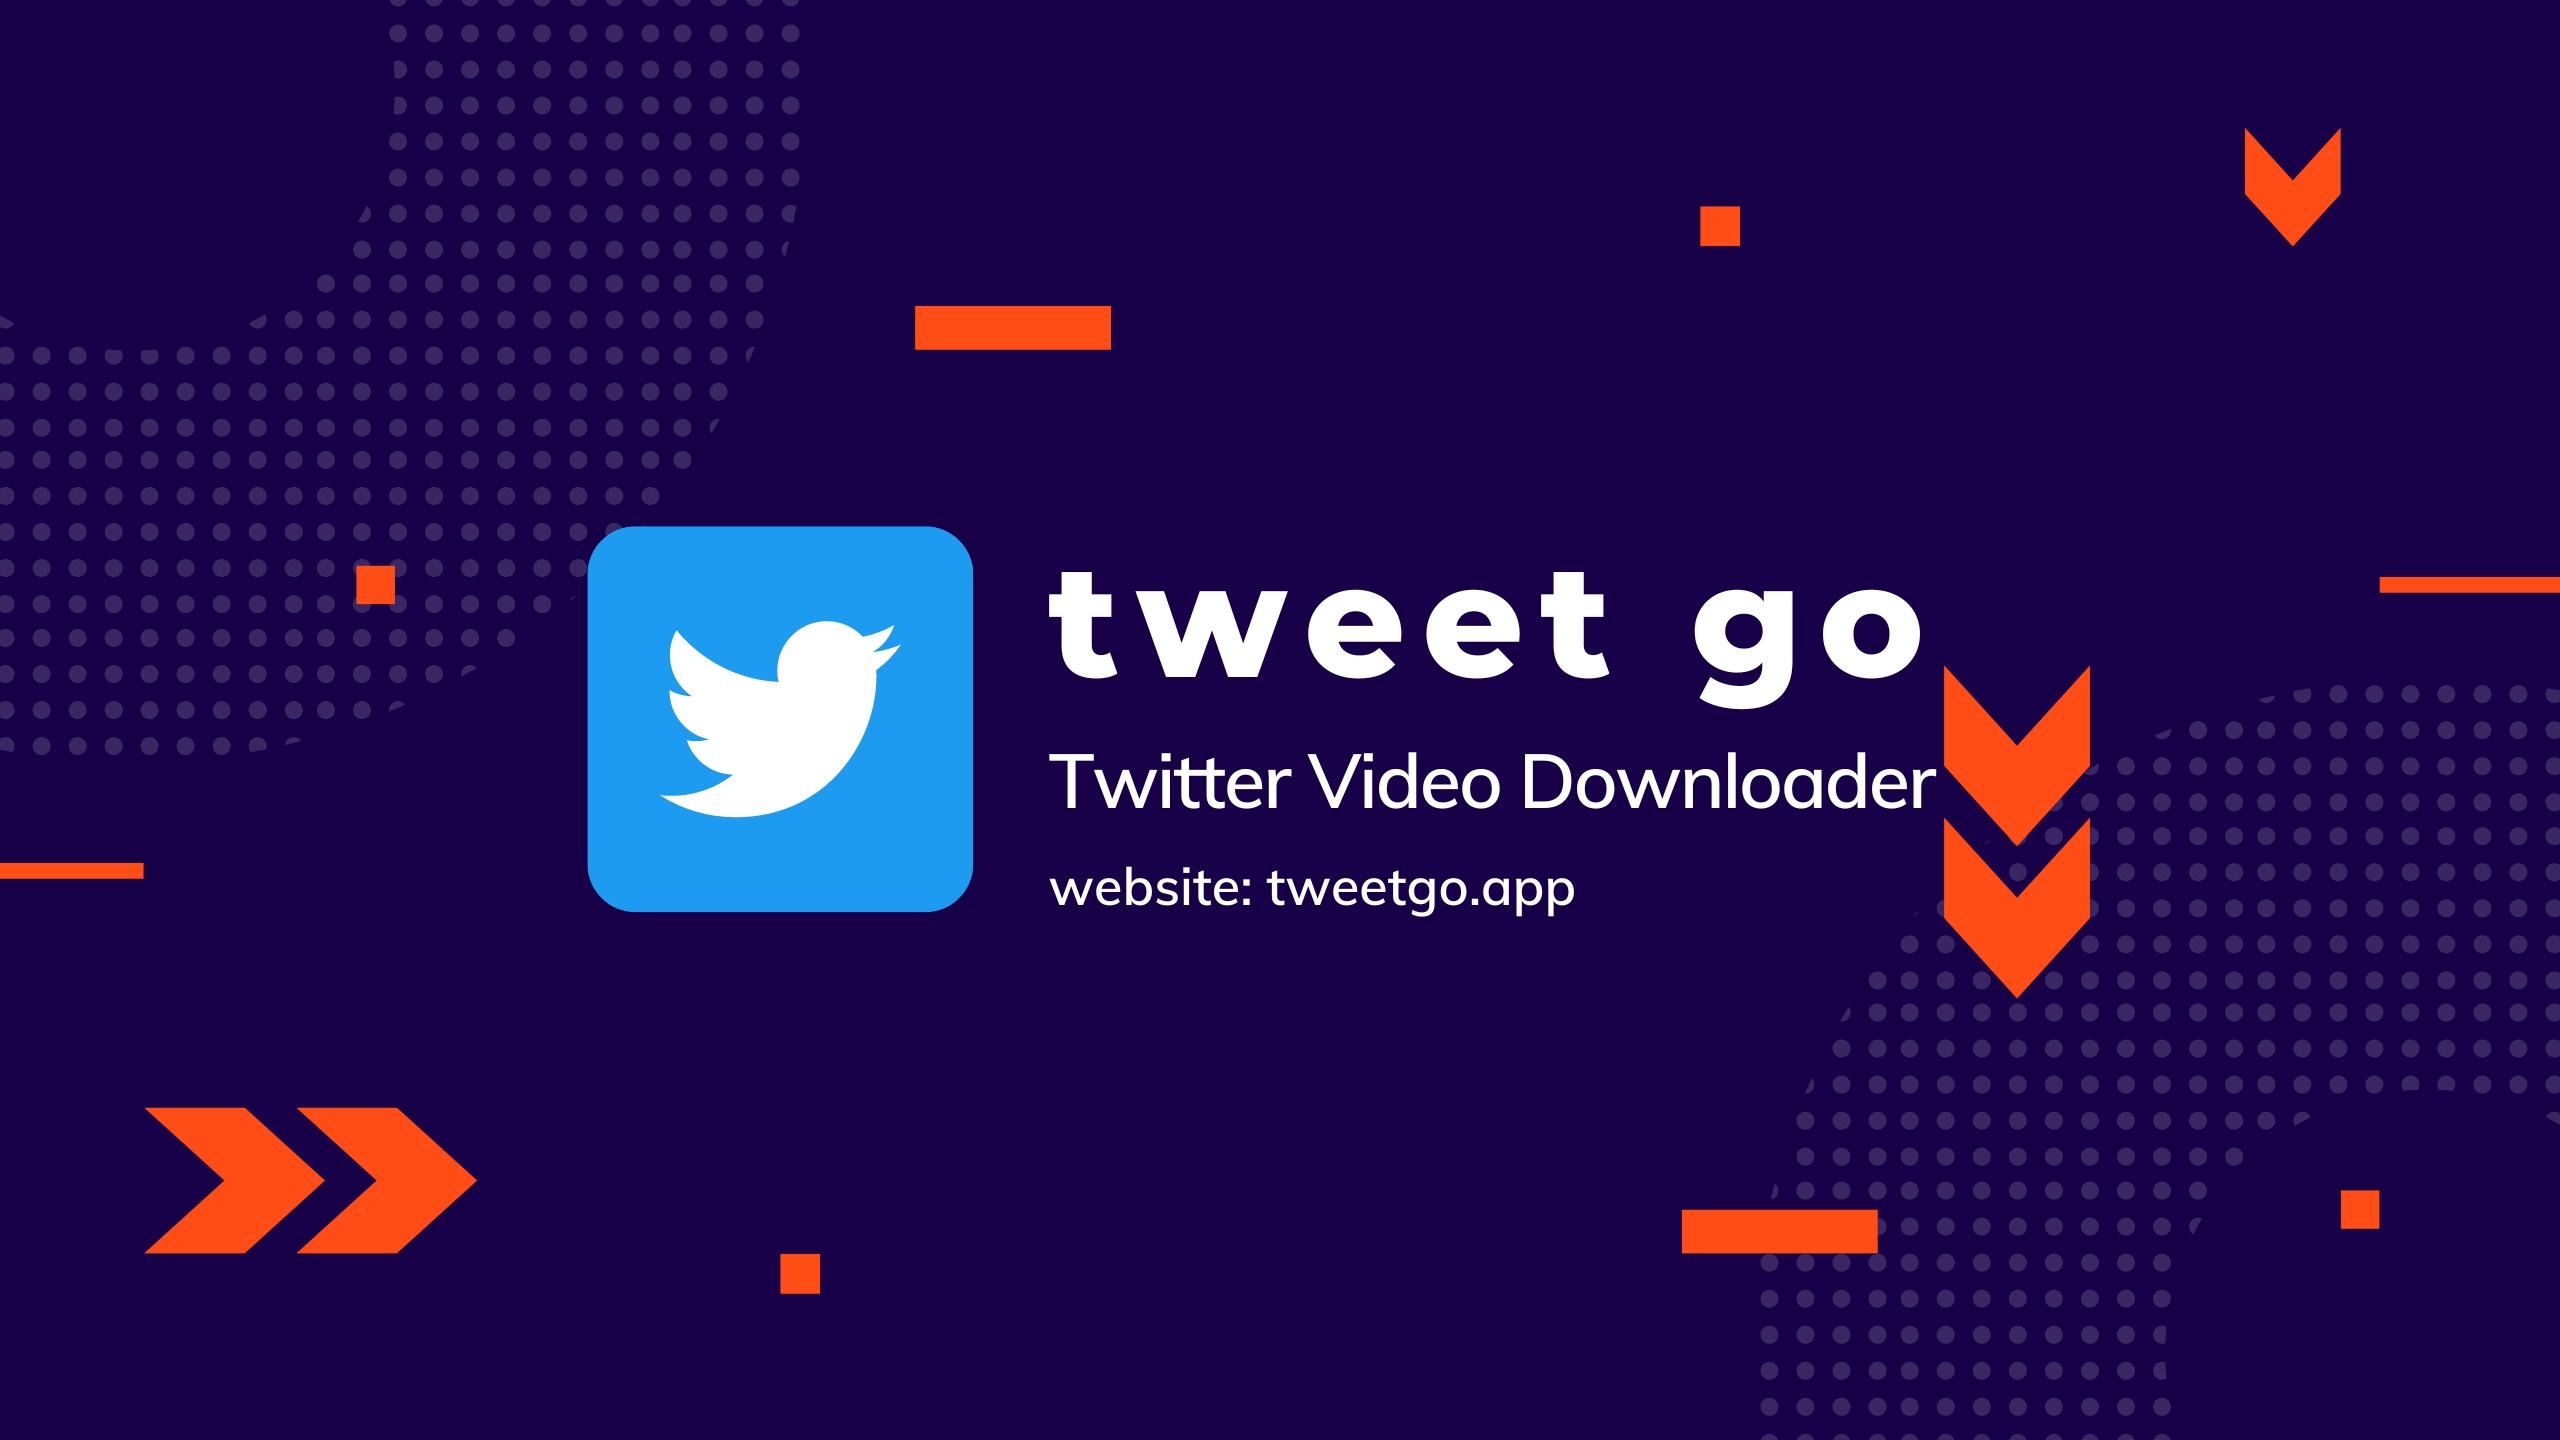 TweetGo (tweetgo.app) - Twitter Video Downloader - Descargar video de Twitter online